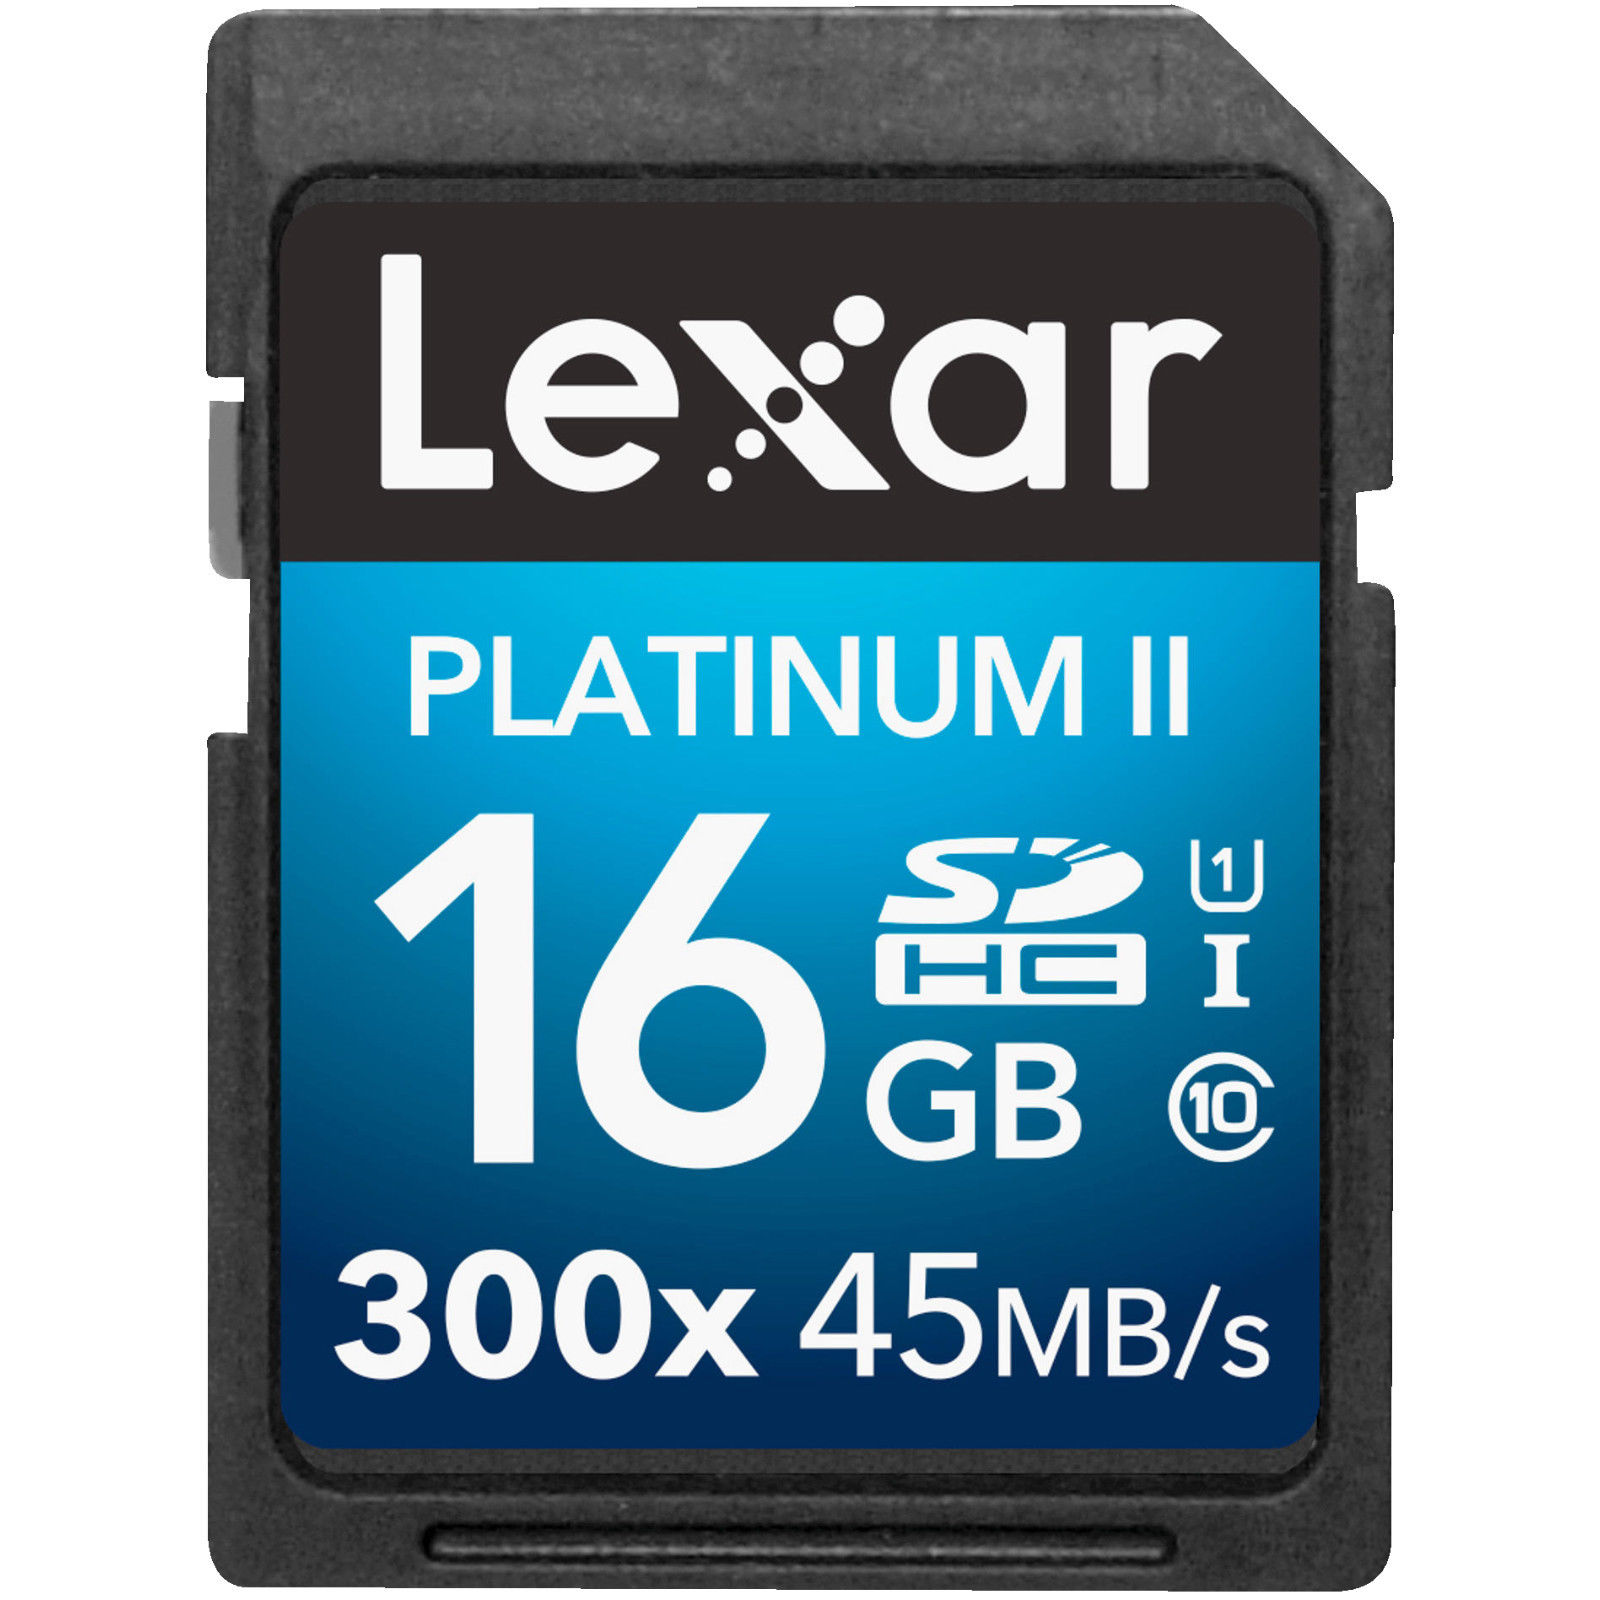 Bild zu Lexar Platinum II 300x SDHC Spei­cher­kar­te (16 GB) für 5€